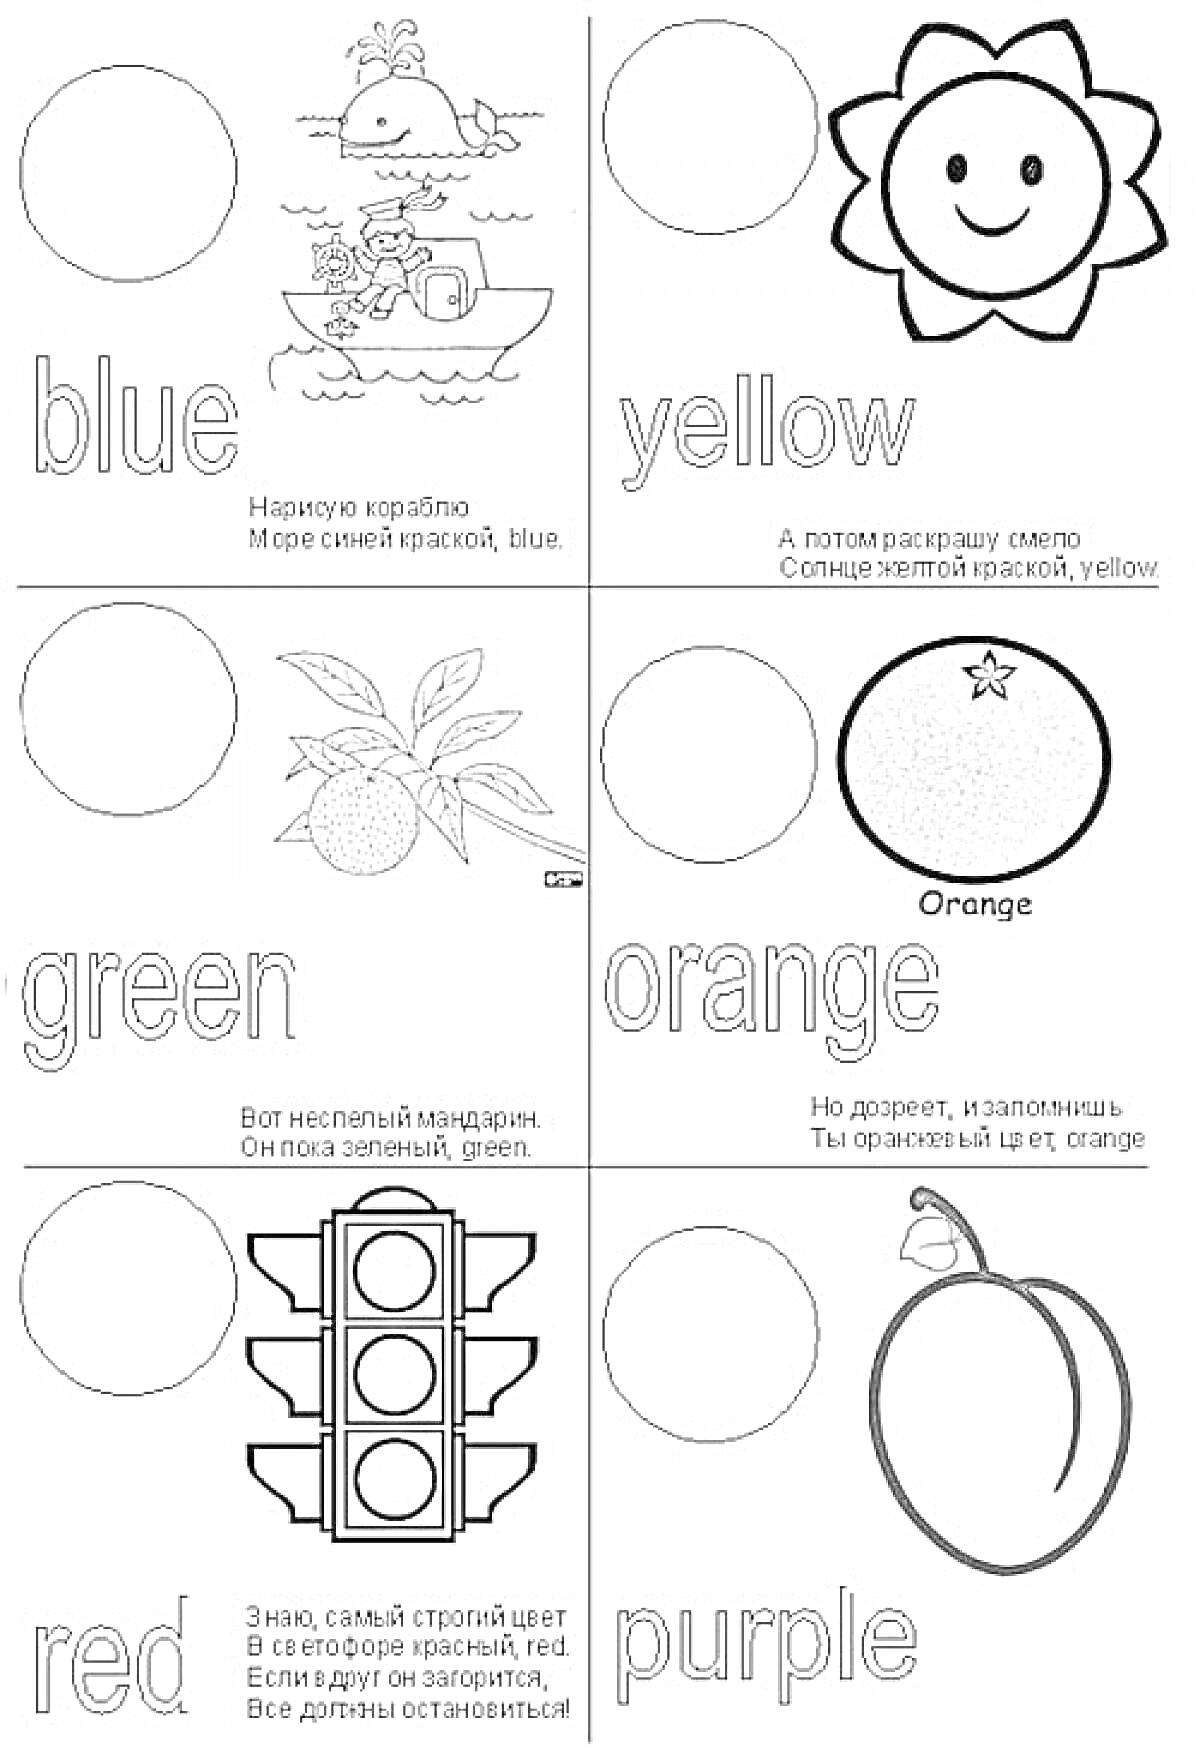 Раскраска Раскраска с названиями цветов на английском языке и соответствующими объектами: корабль (blue), солнце (yellow), апельсин (orange), светофор (red), груша (purple), мандарин (green)